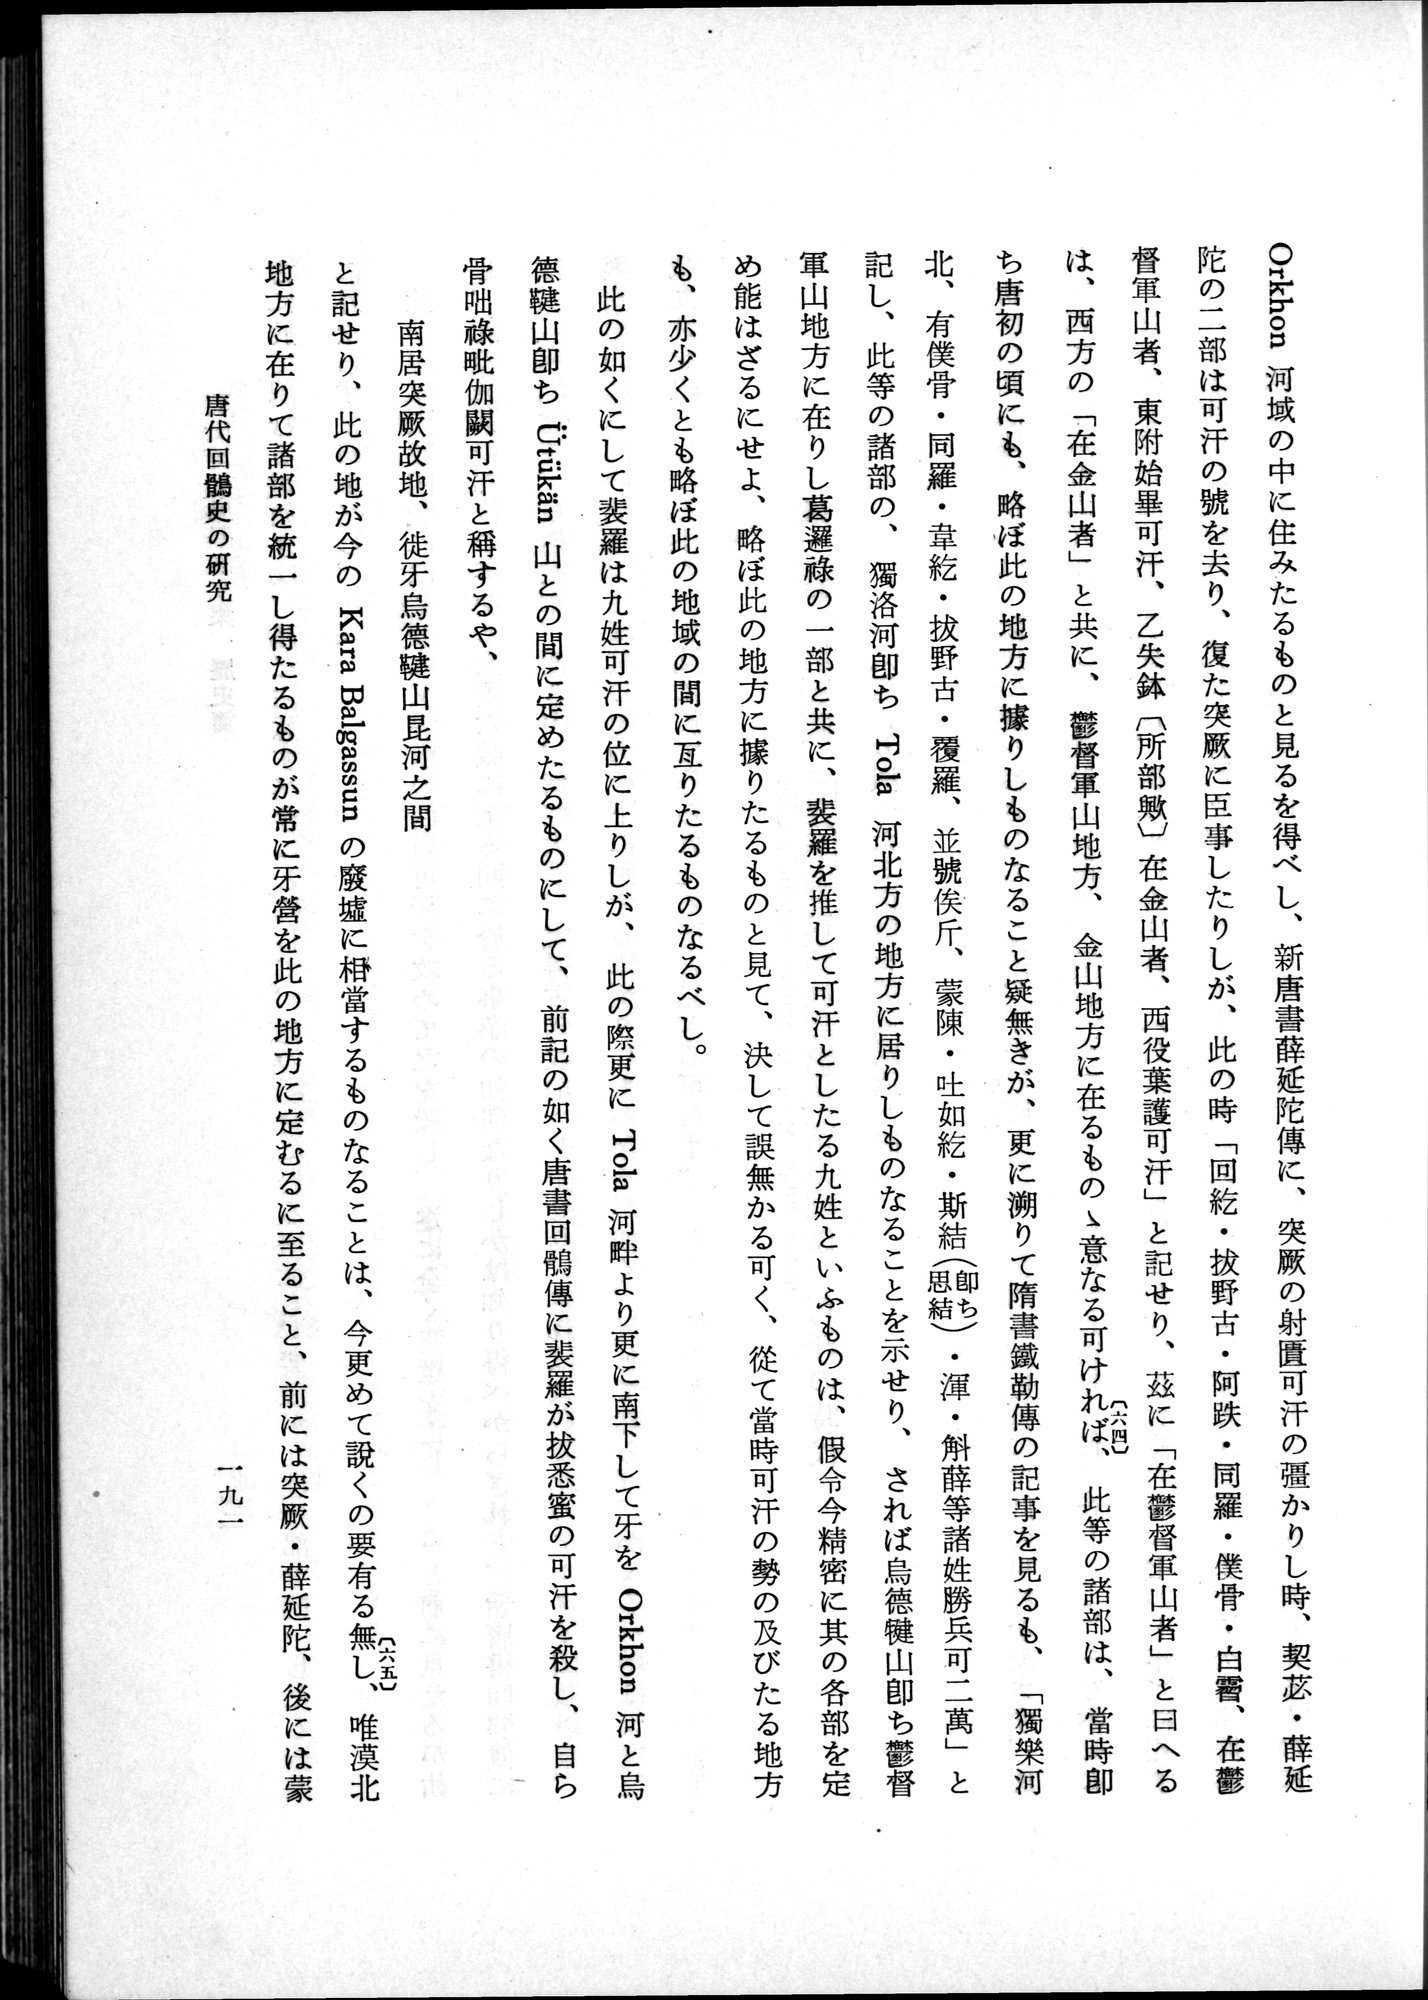 羽田博士史学論文集 : vol.1 / Page 229 (Grayscale High Resolution Image)